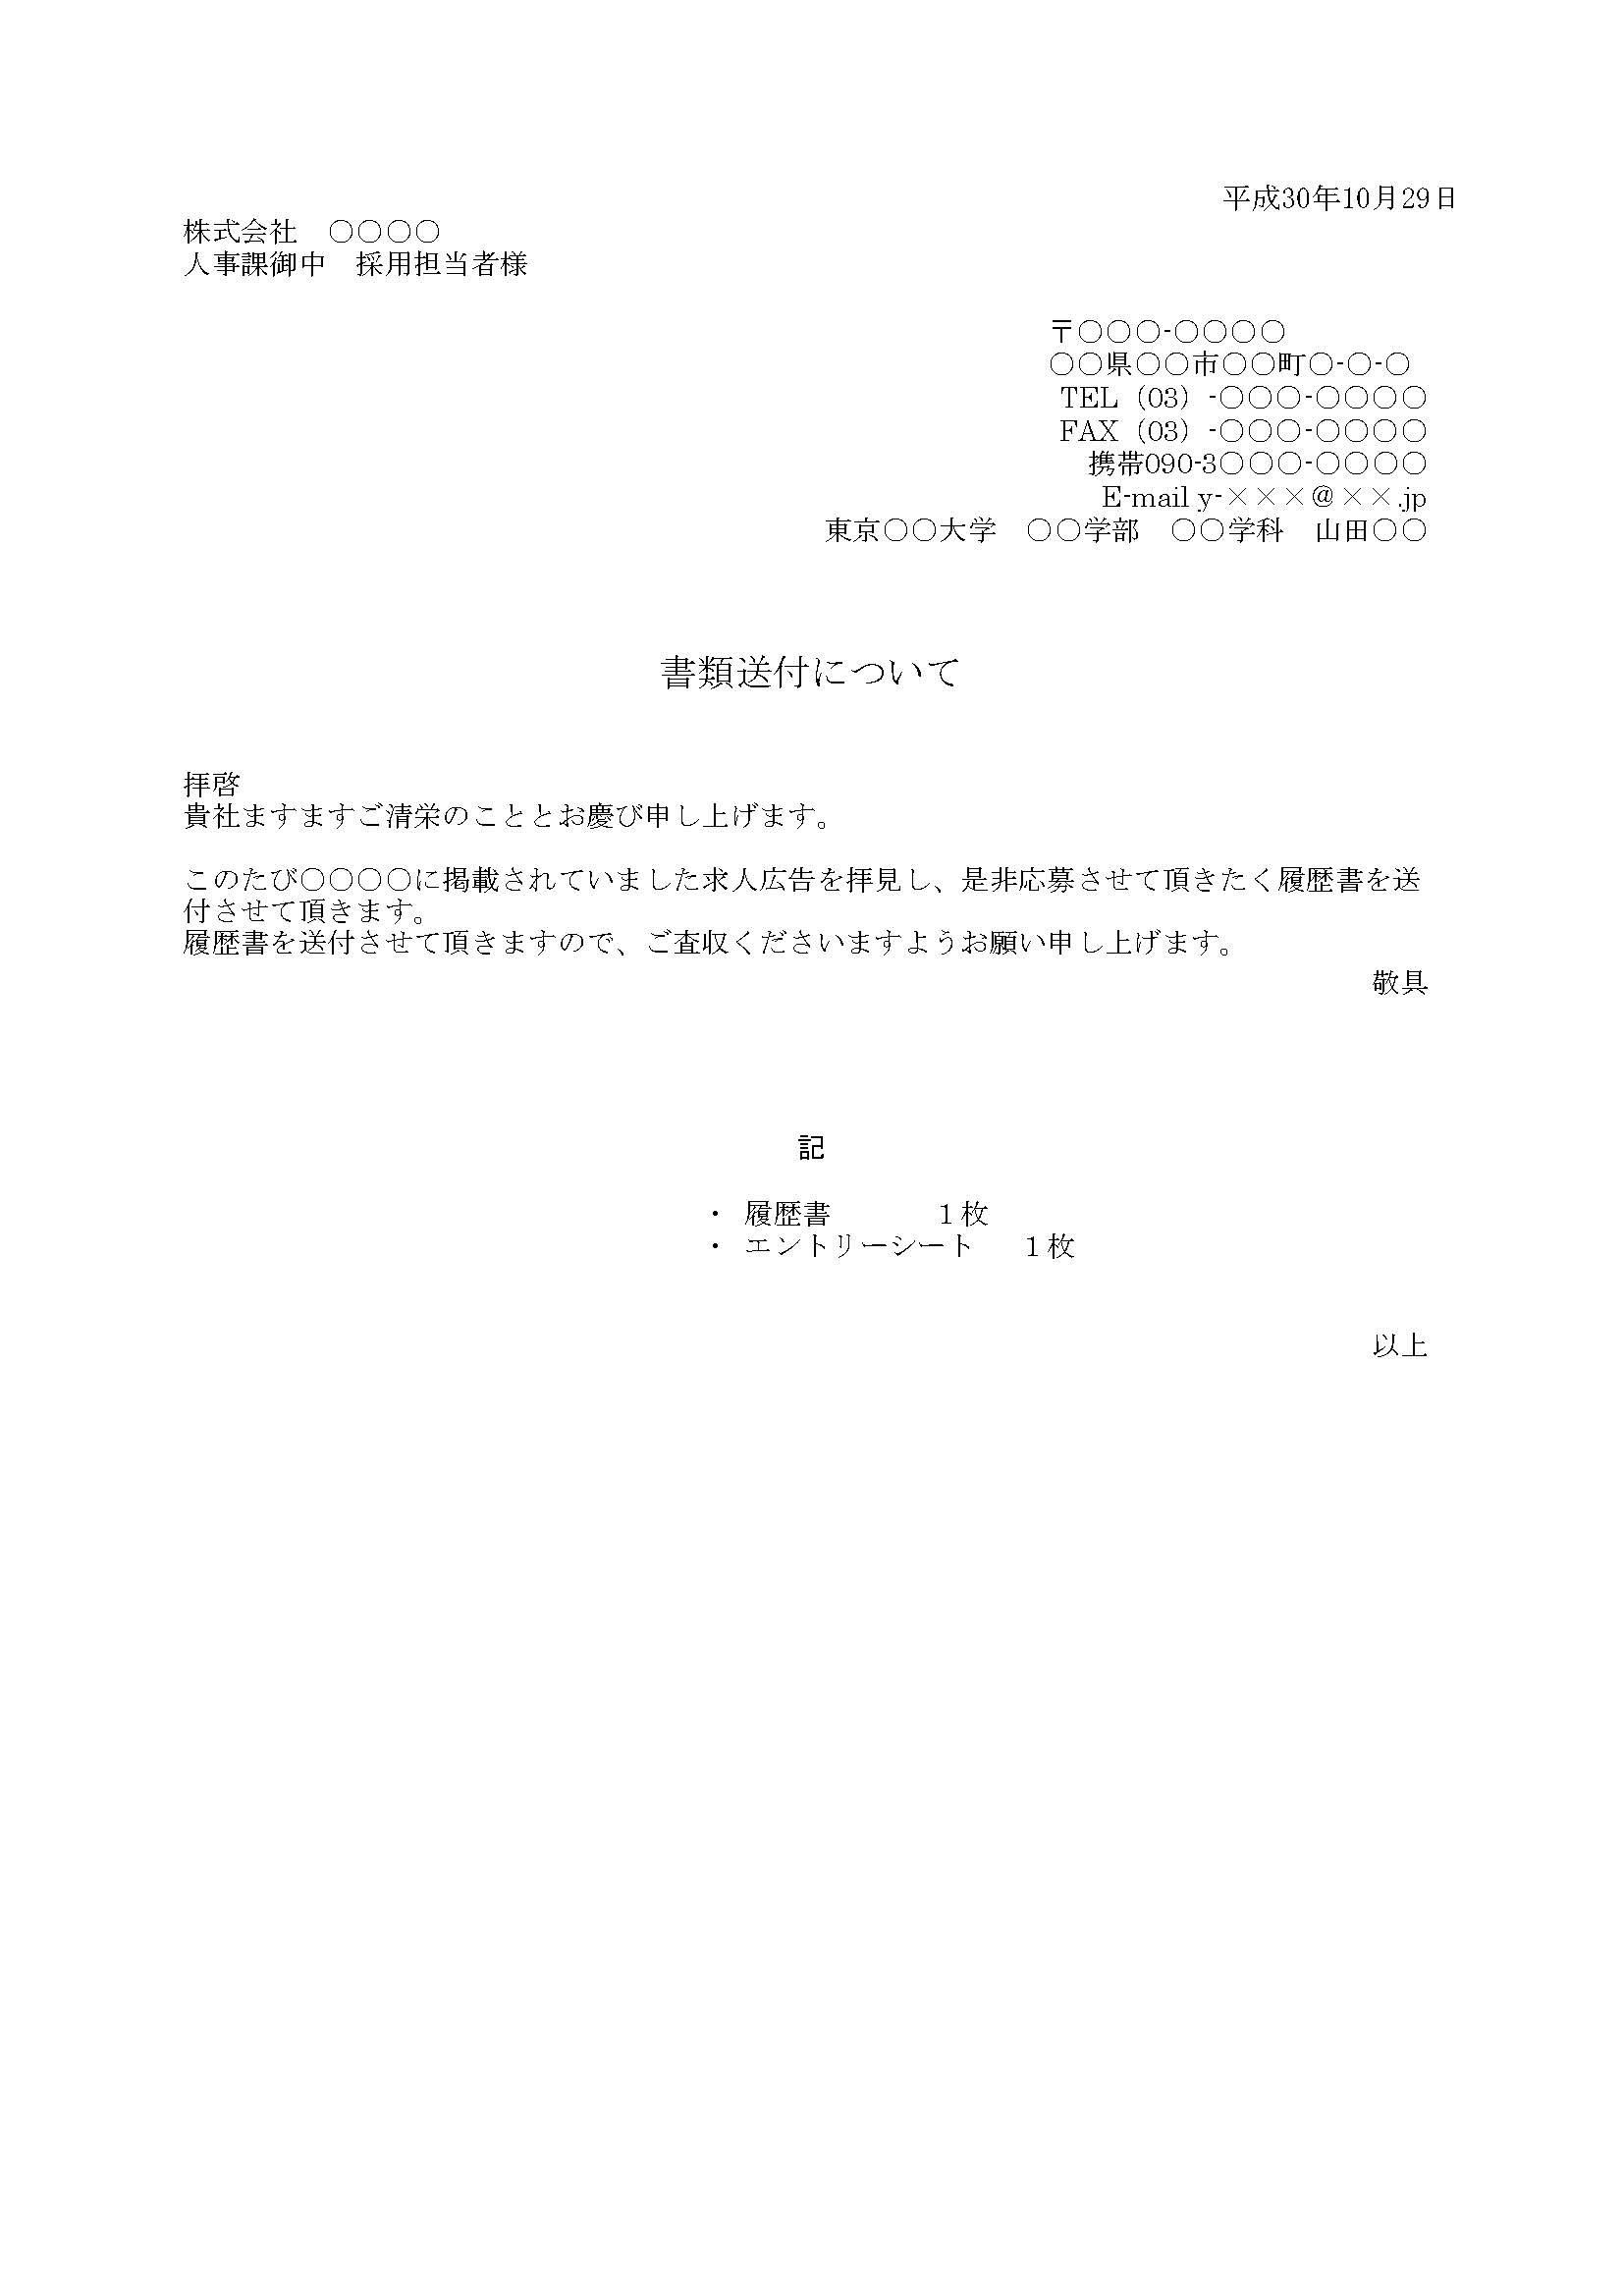 育成 規制 コンサルタント 履歴 書 Fax 送信 状 Shioya Kaishu Jp